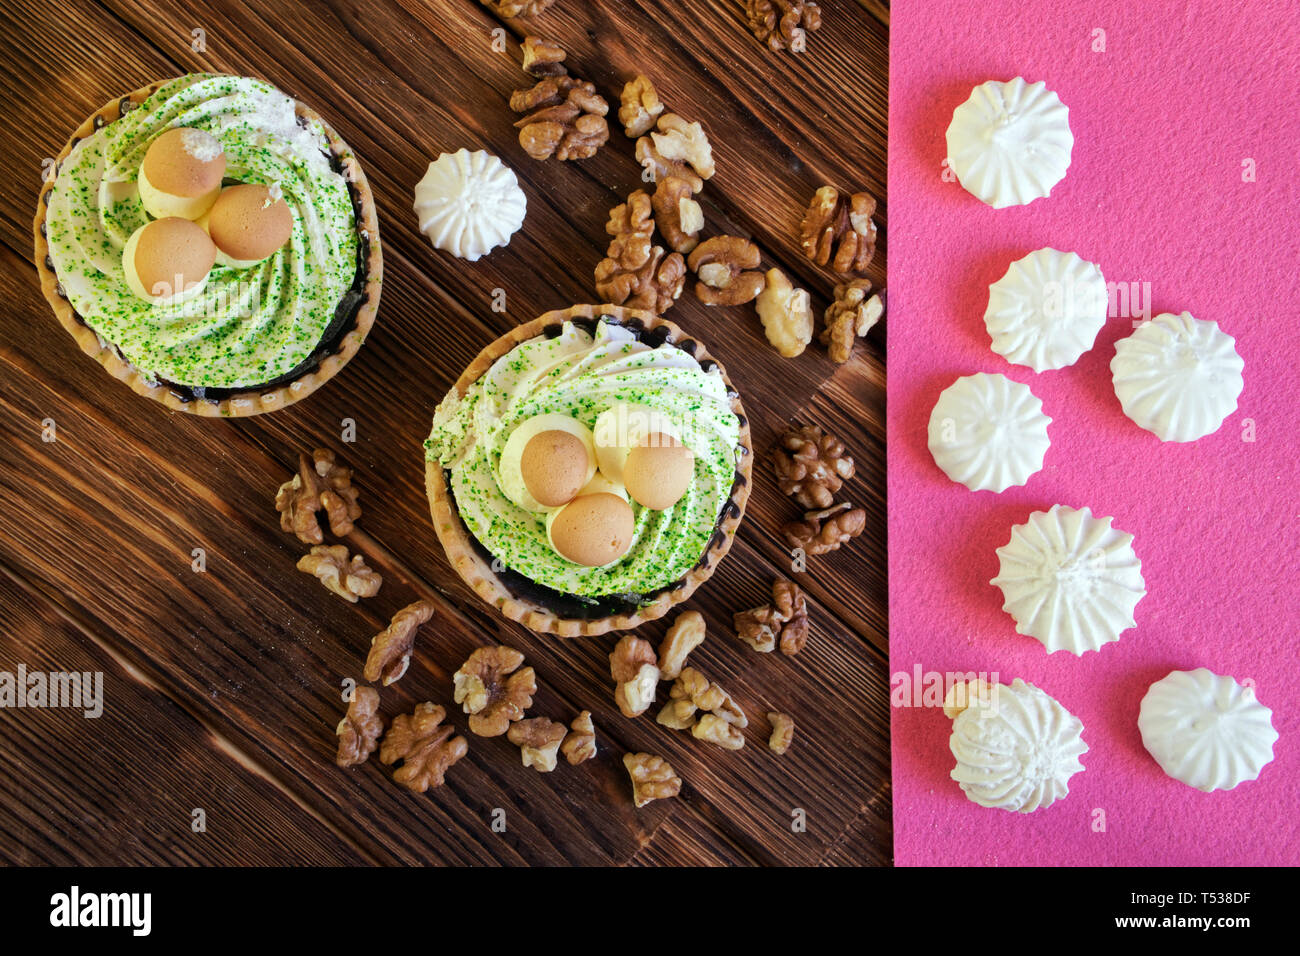 Kuchen in Form von einem Korb mit Pilzen, Walnüsse und Baisers auf dem Tisch der Kiefer Dielen geschält. Natürliche braun und rosa Hintergrund. Anzeigen von ab Stockfoto